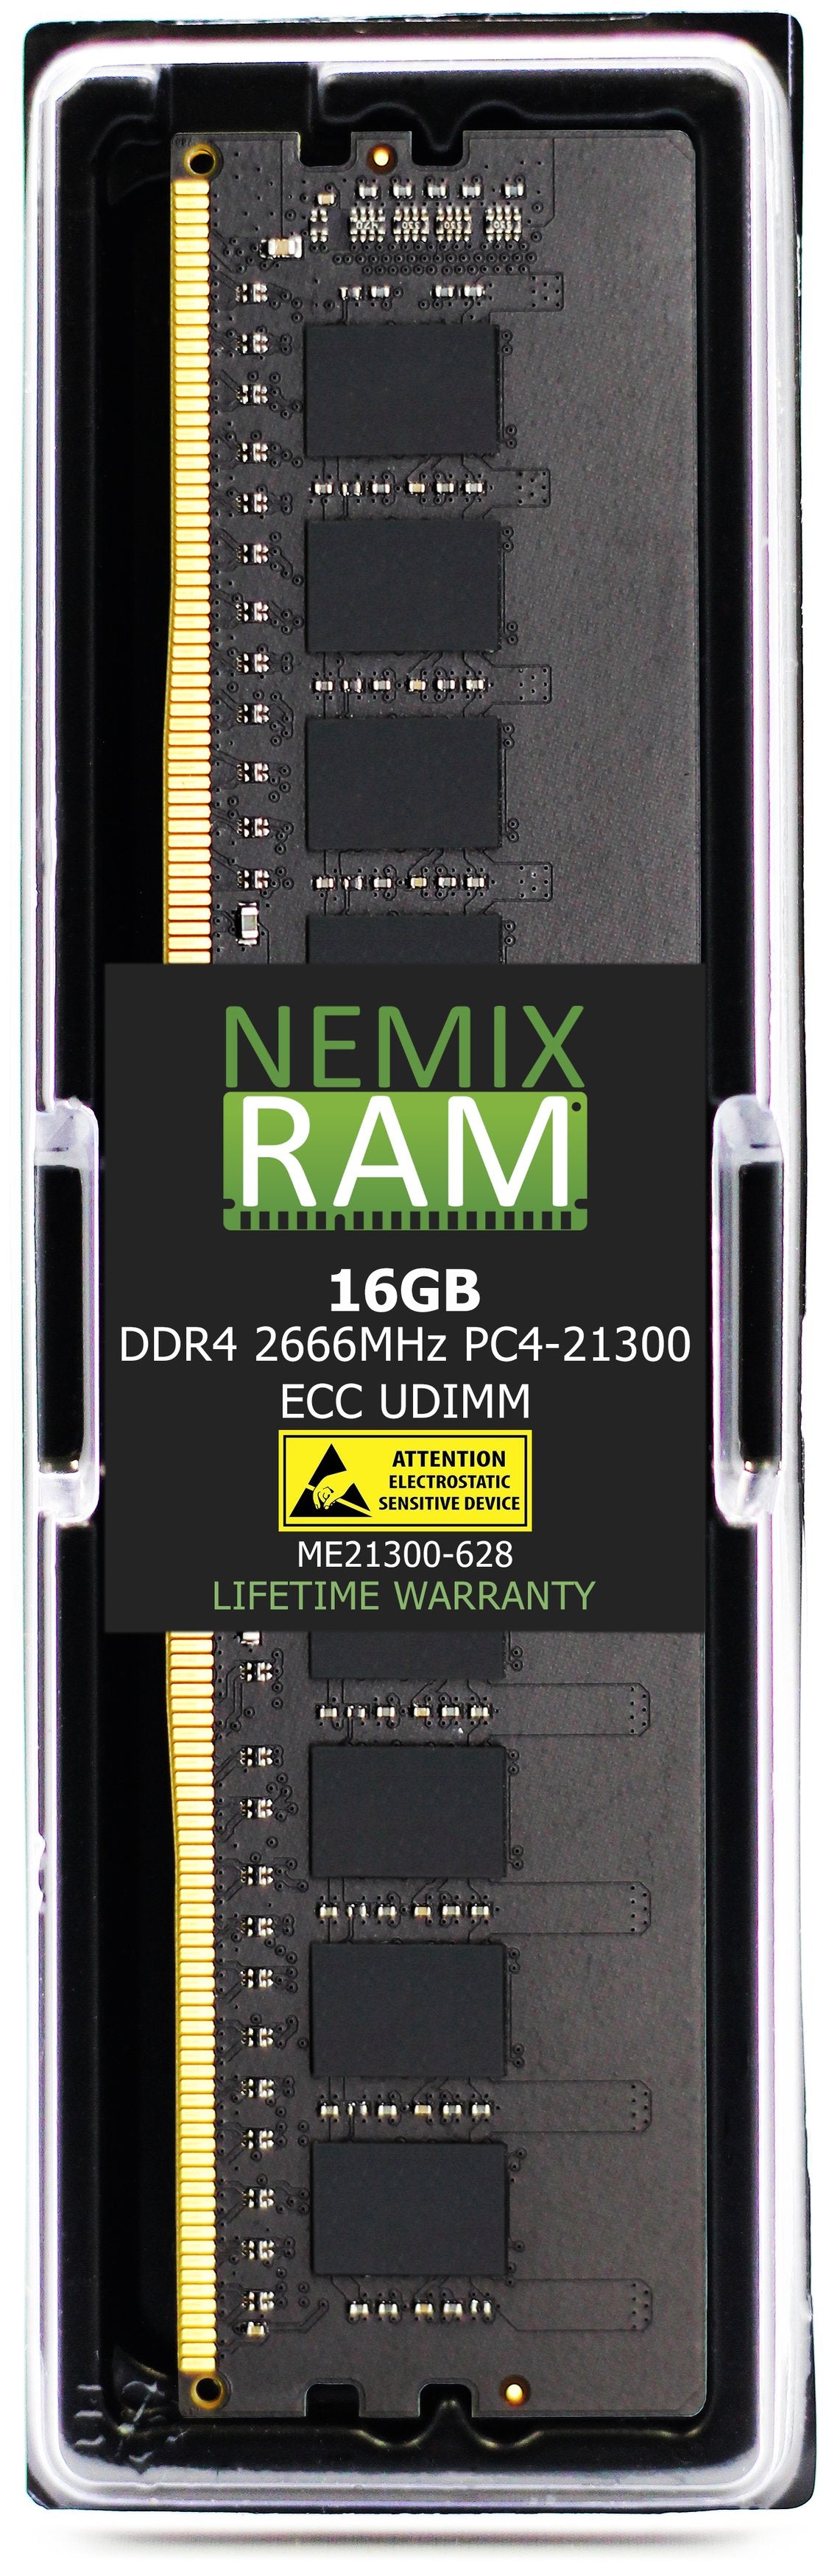 NEC Express5800 T110j Memory Module N8102-717F 16GB DDR4 2666MHZ PC4-21300 ECC UDIMM